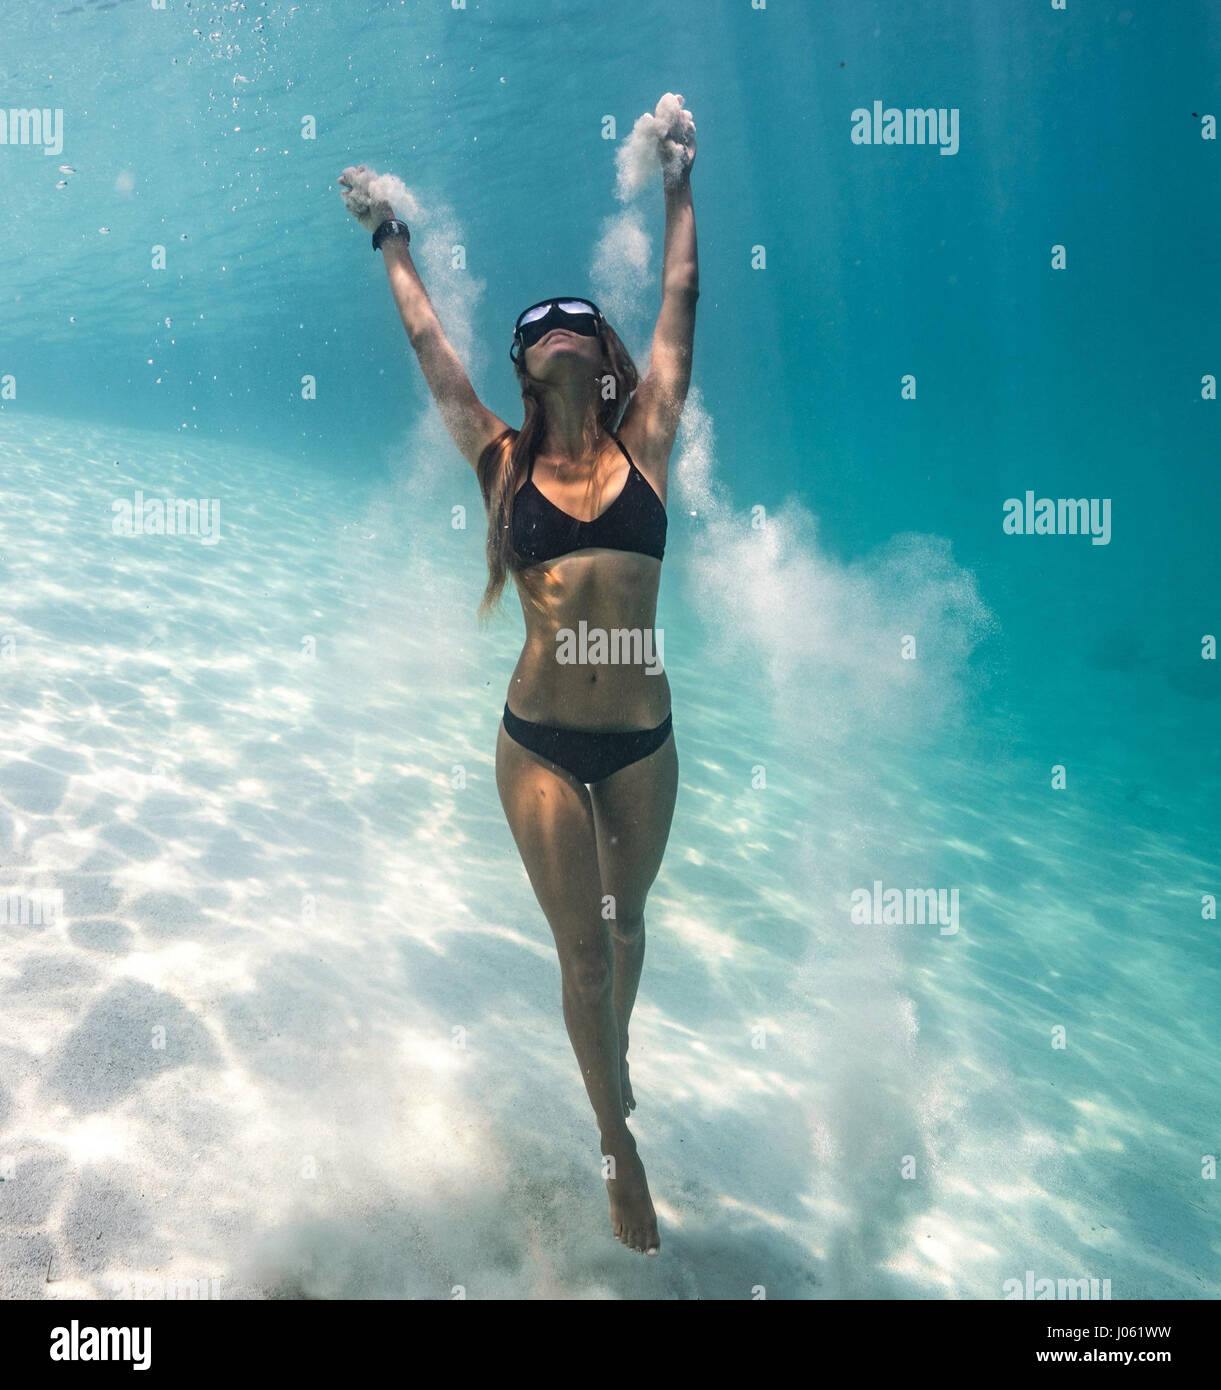 Satisfacer el sorprendente campeón hembra apneista quién usa el yoga para ayudarla a descubrir nuevas profundidades de los océanos del mundo. La serie de imágenes y secuencias de vídeo majestuoso espectáculo formador de profesores de yoga y el apneista, Kate Middleton (29), que puede contener su respiración por un increíble seis-y-uno-mitad-minutos debajo del agua, realizando camello yoga plantea en una piscina piso y golpeando una pose dentro de un hula hoop en el lecho marino. Otras fotografías muestran a Kate realizar ambiciosos posturas de yoga en tierra seca con un socio en una pared y golpeando una división permanente en una puerta. Foto de stock